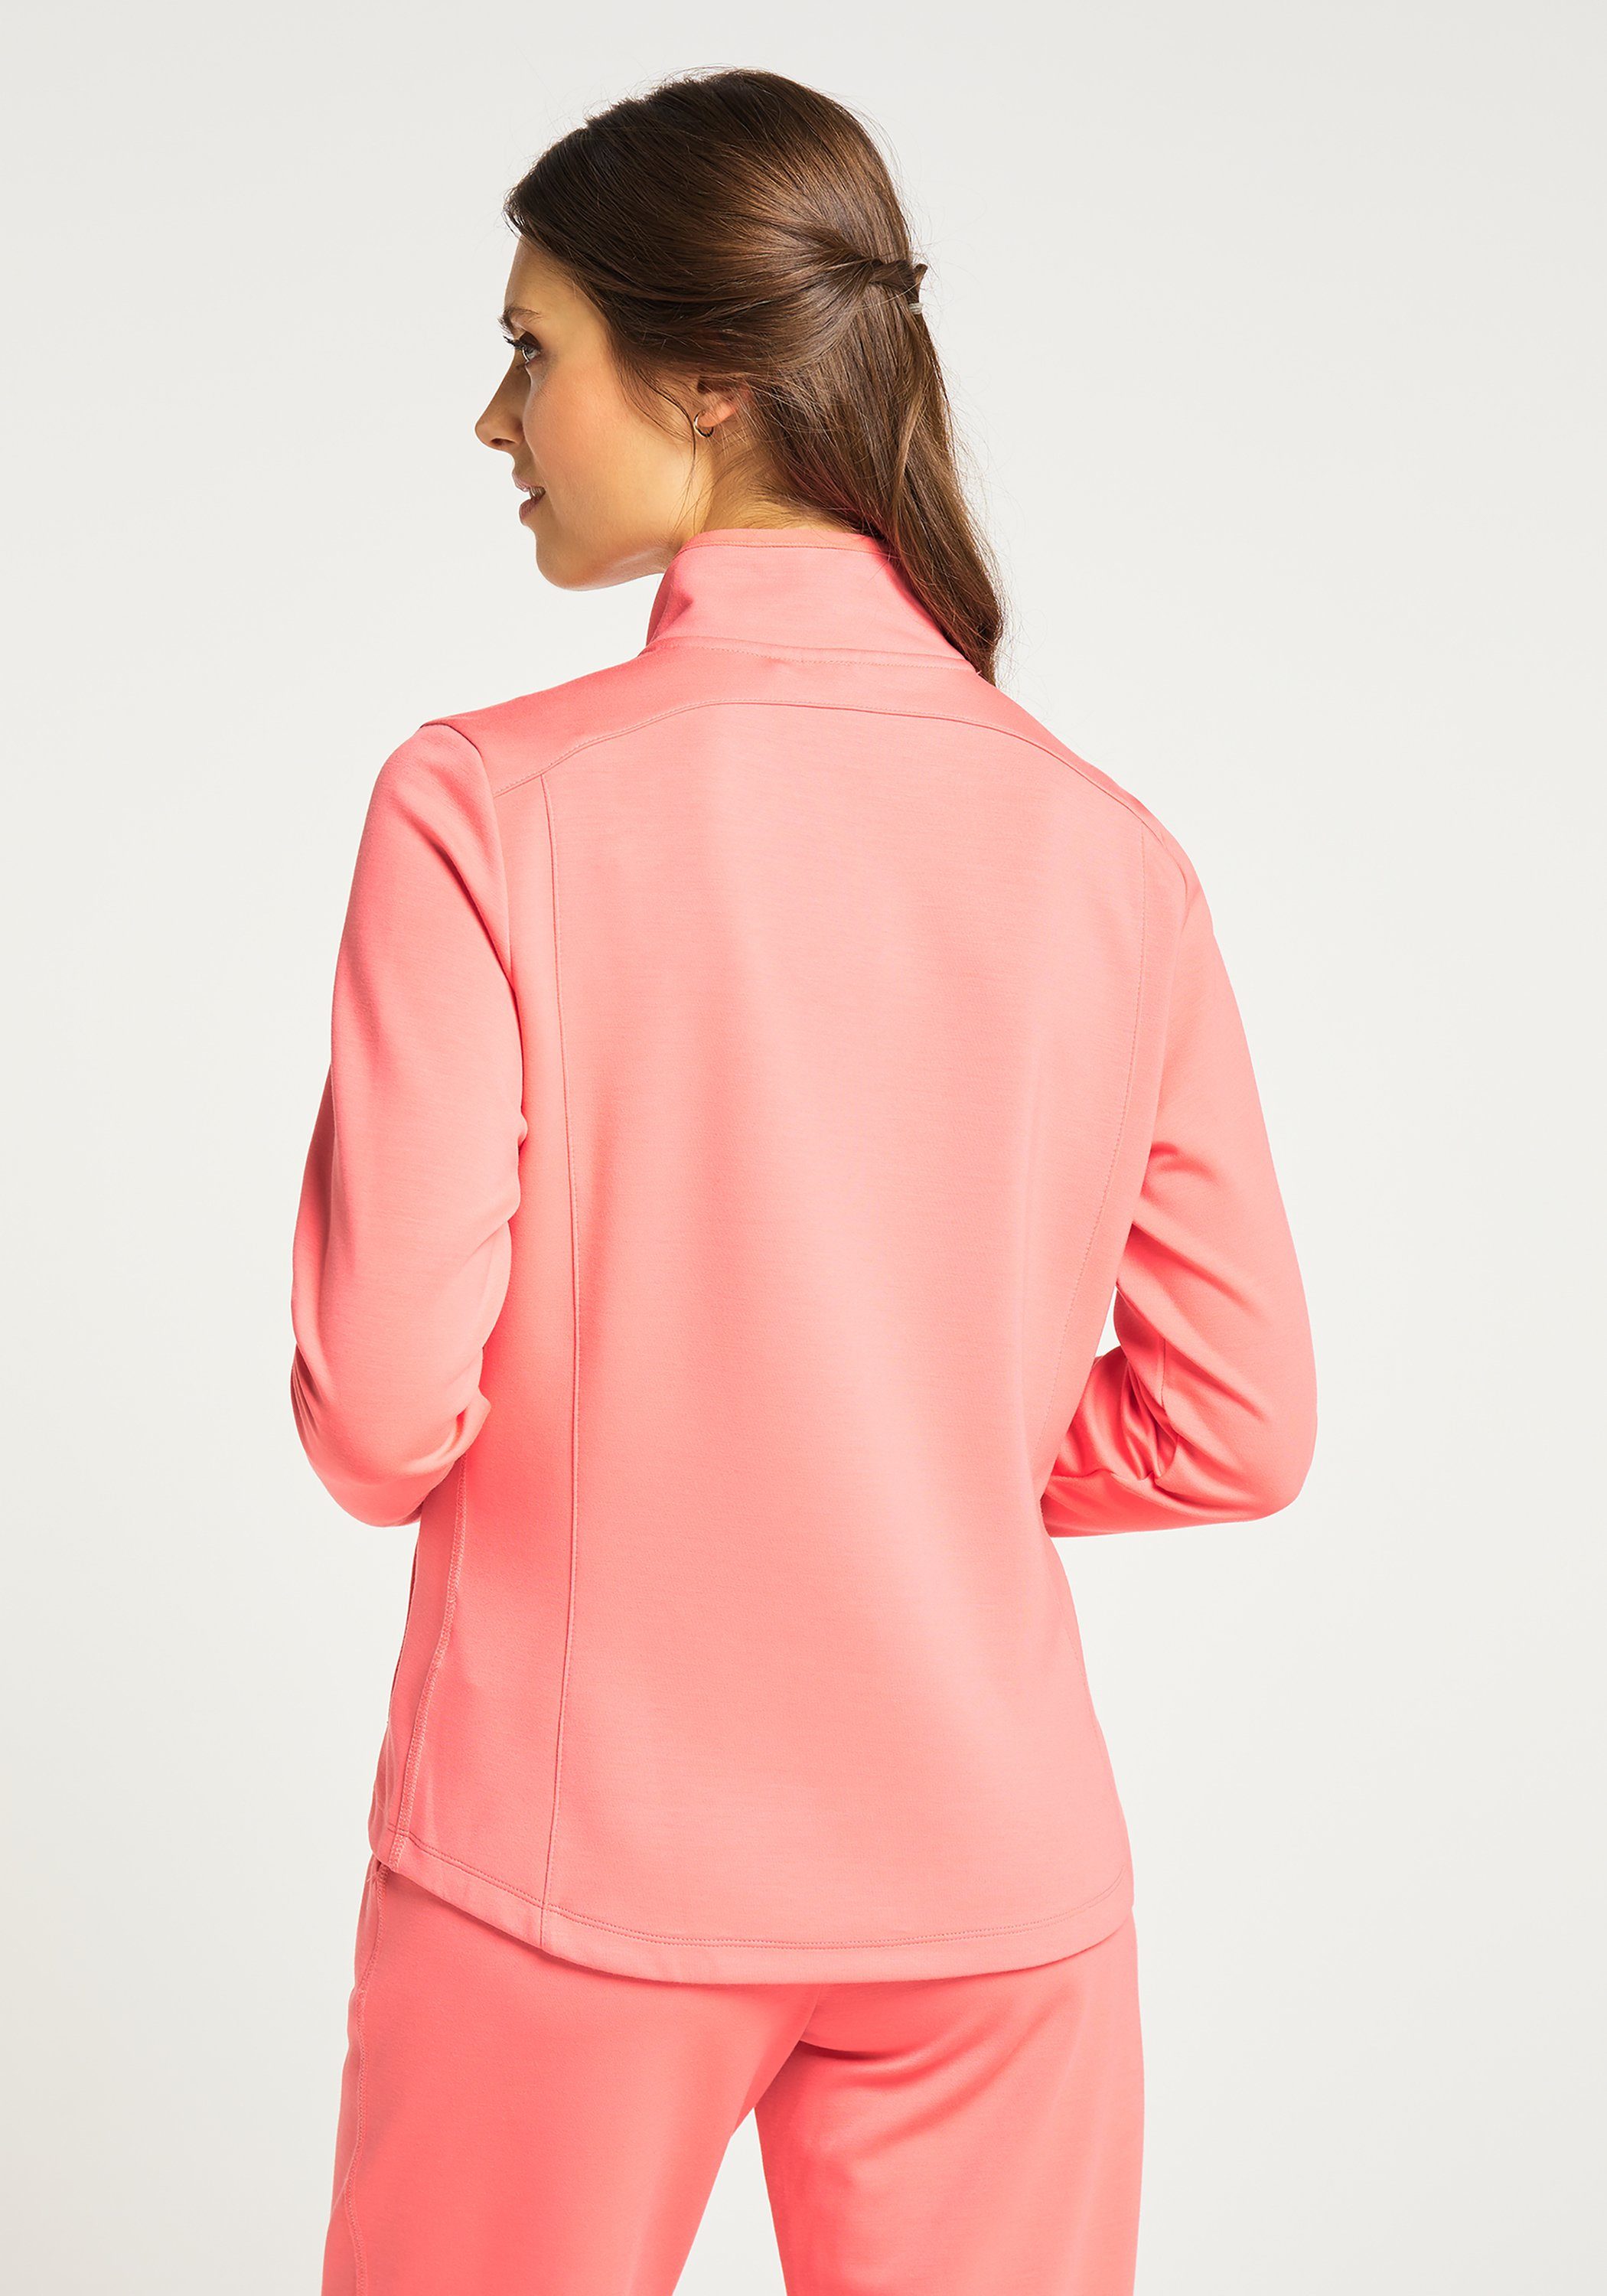 Sportswear MALA coral Jacke pink Trainingsjacke Joy